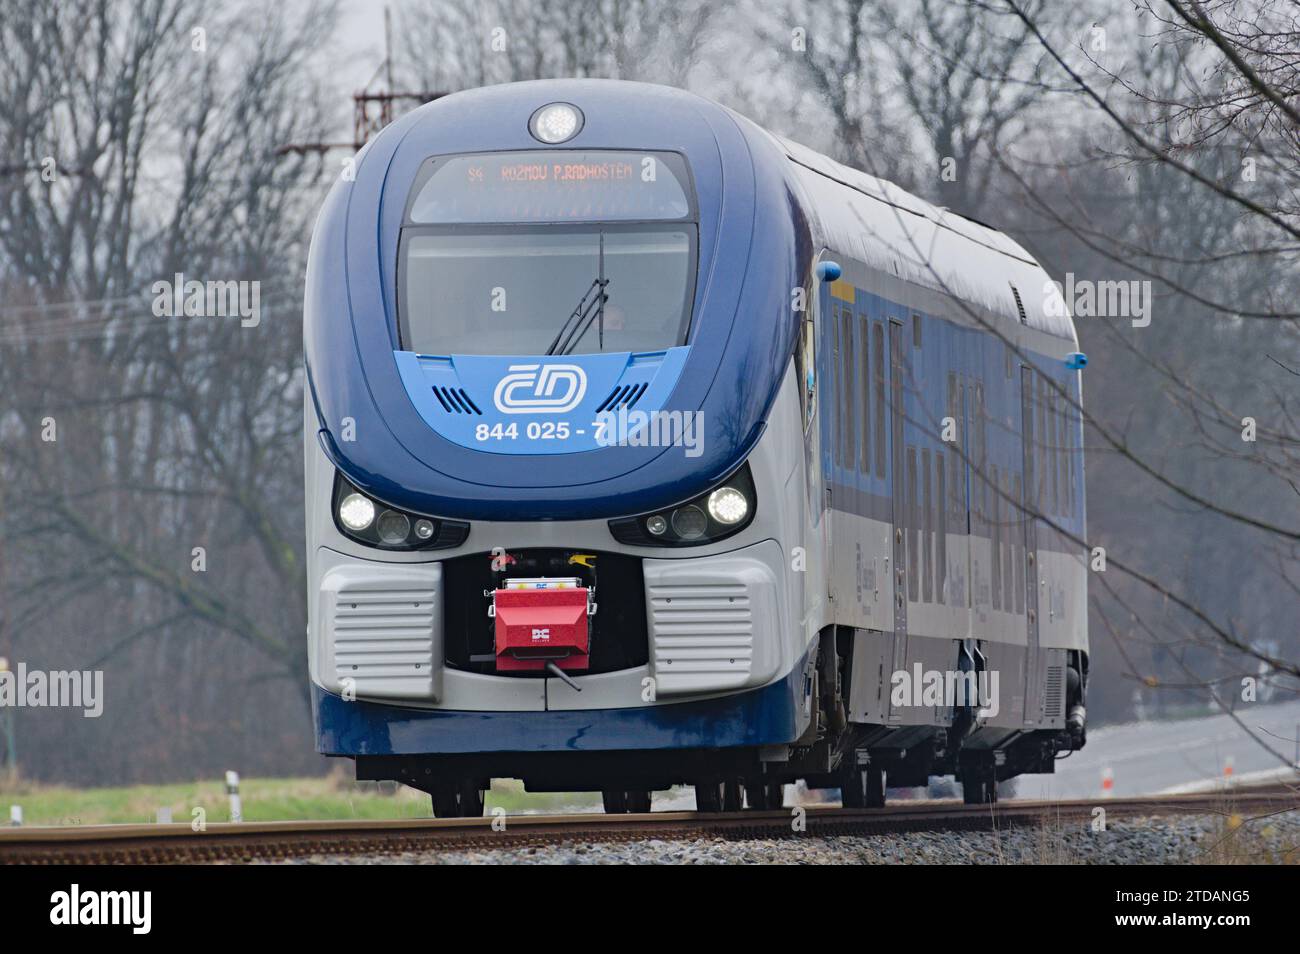 Treno regionale locale dell'impresa statale Ceske drahy - Czech Railways. Importante operatore ferroviario nella Repubblica ceca. Foto Stock